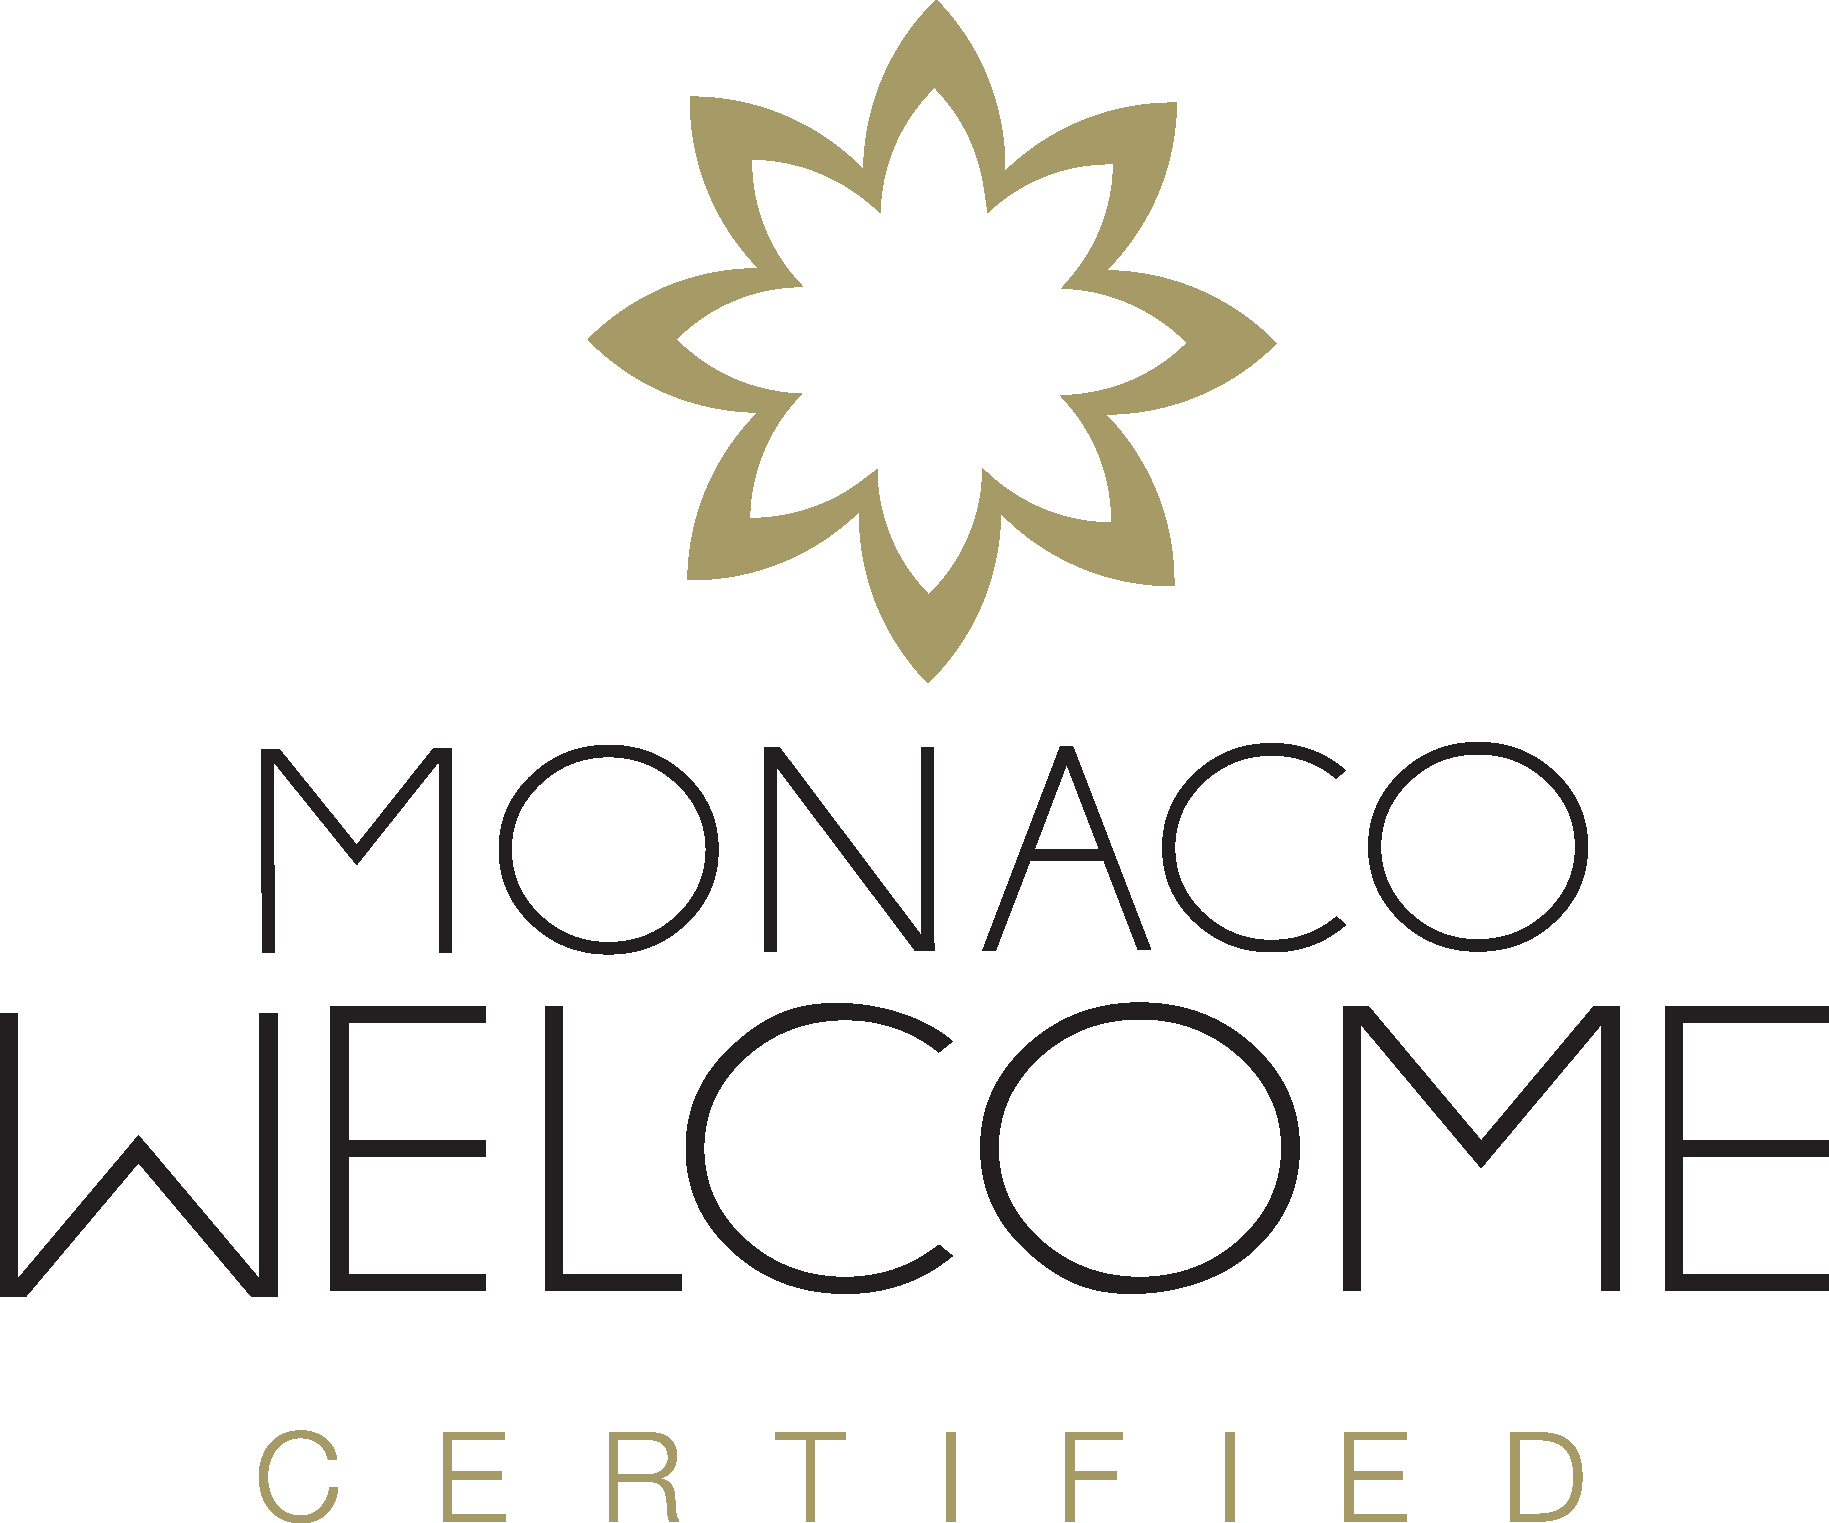 Monaco Welcome